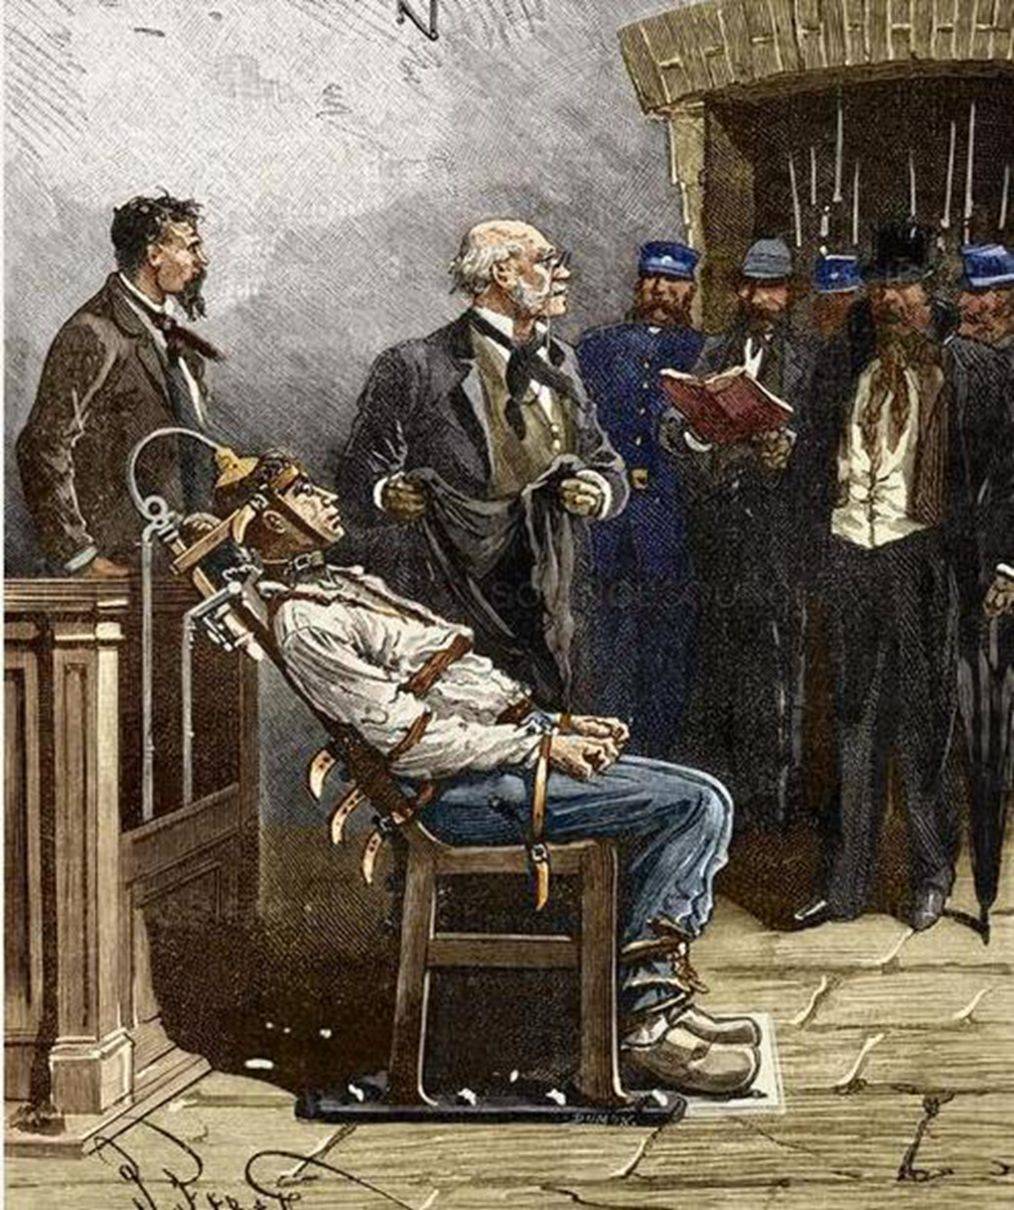 第一个被电死的犯人连续处决3次:1890年8月6日凯姆勒被电椅处死